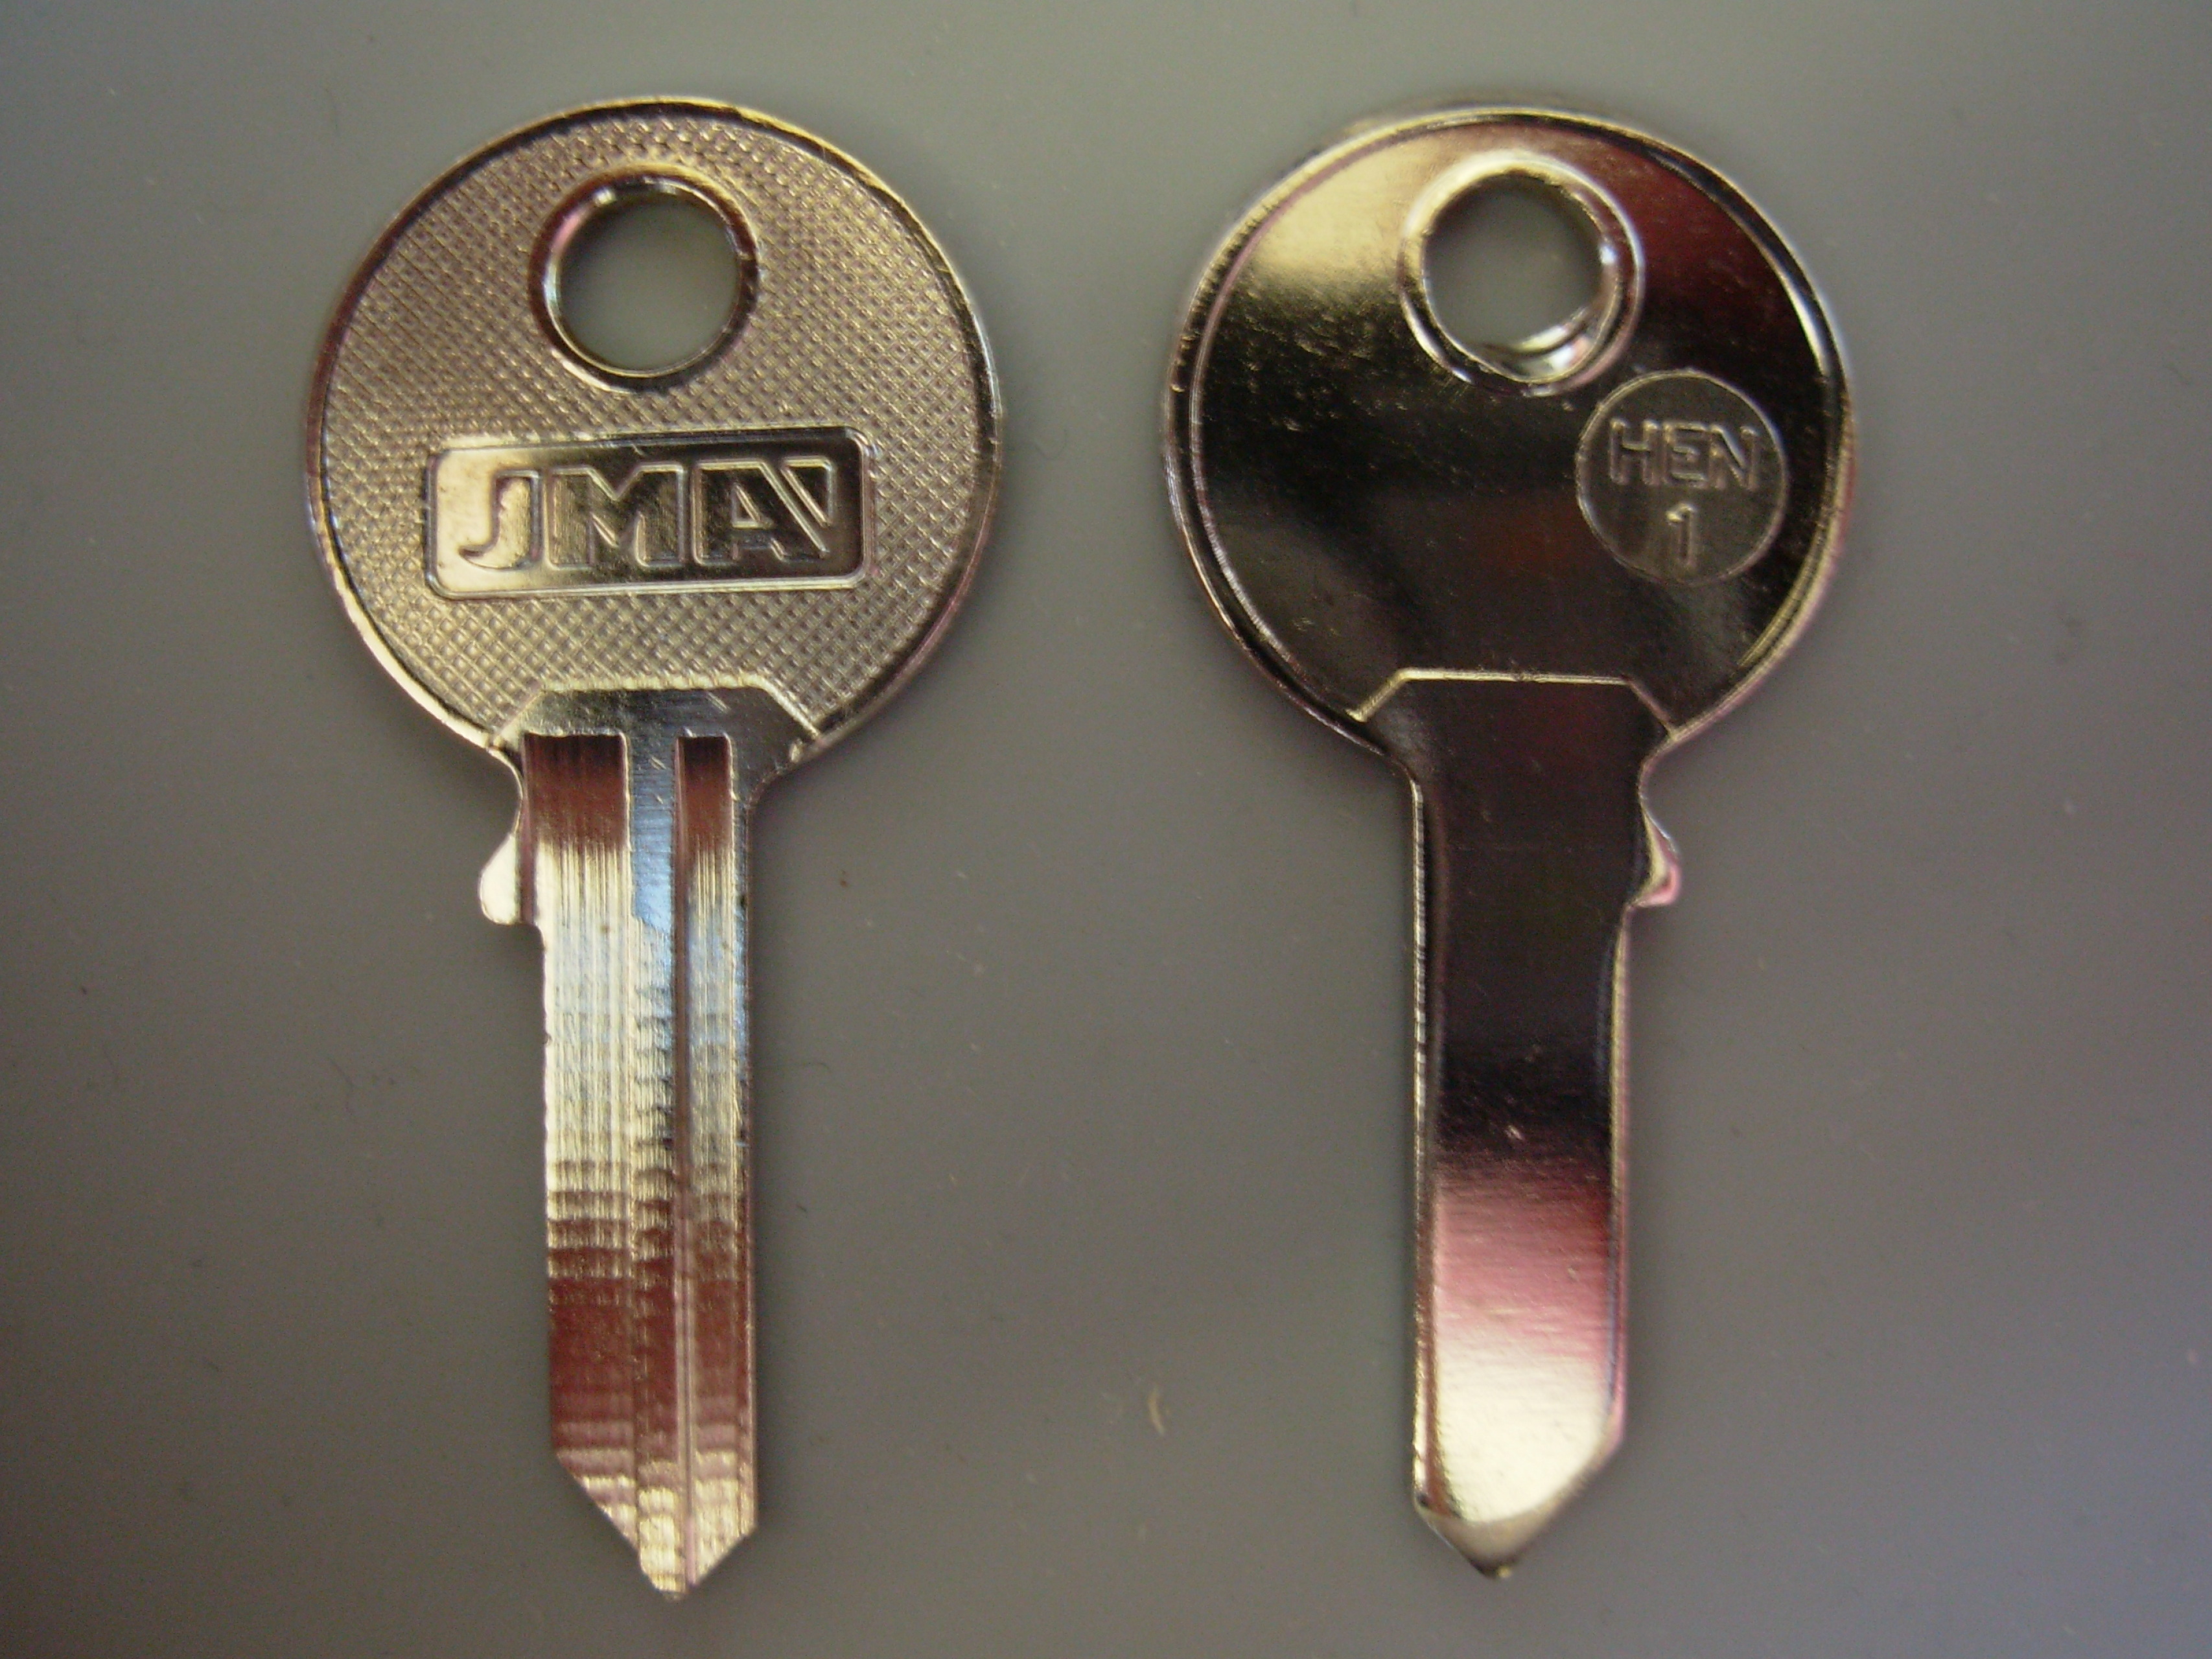 Henderson R008 to R254 Garage Door Replacement Keys Cut to Code 